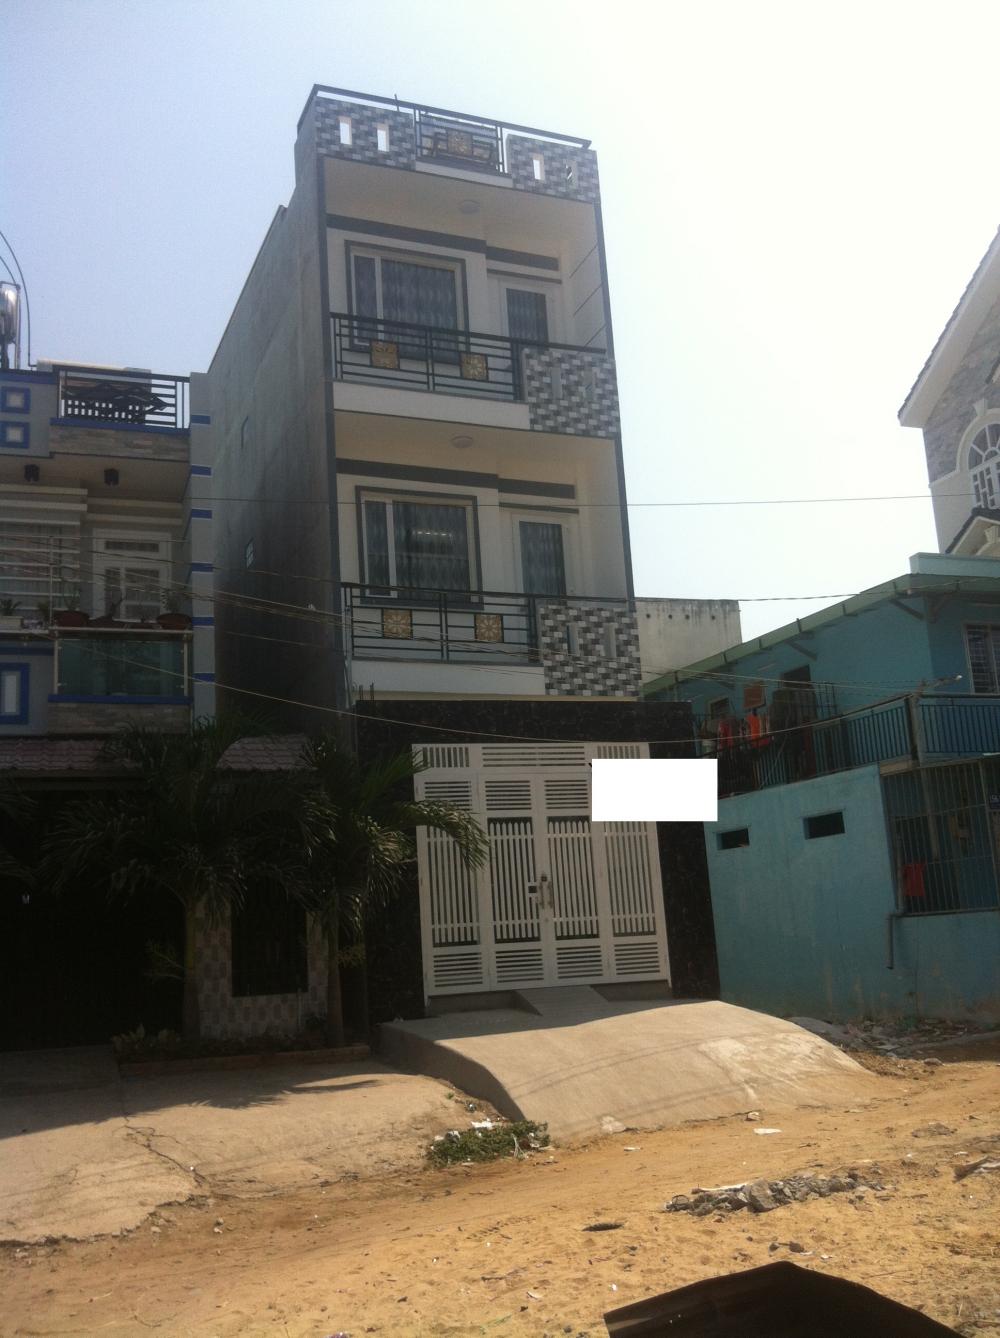 Bán nhà mới 100% khu dân cư Lê Thành, DT 4x16m, giá 2.85 tỷ. LH 0918 688 067